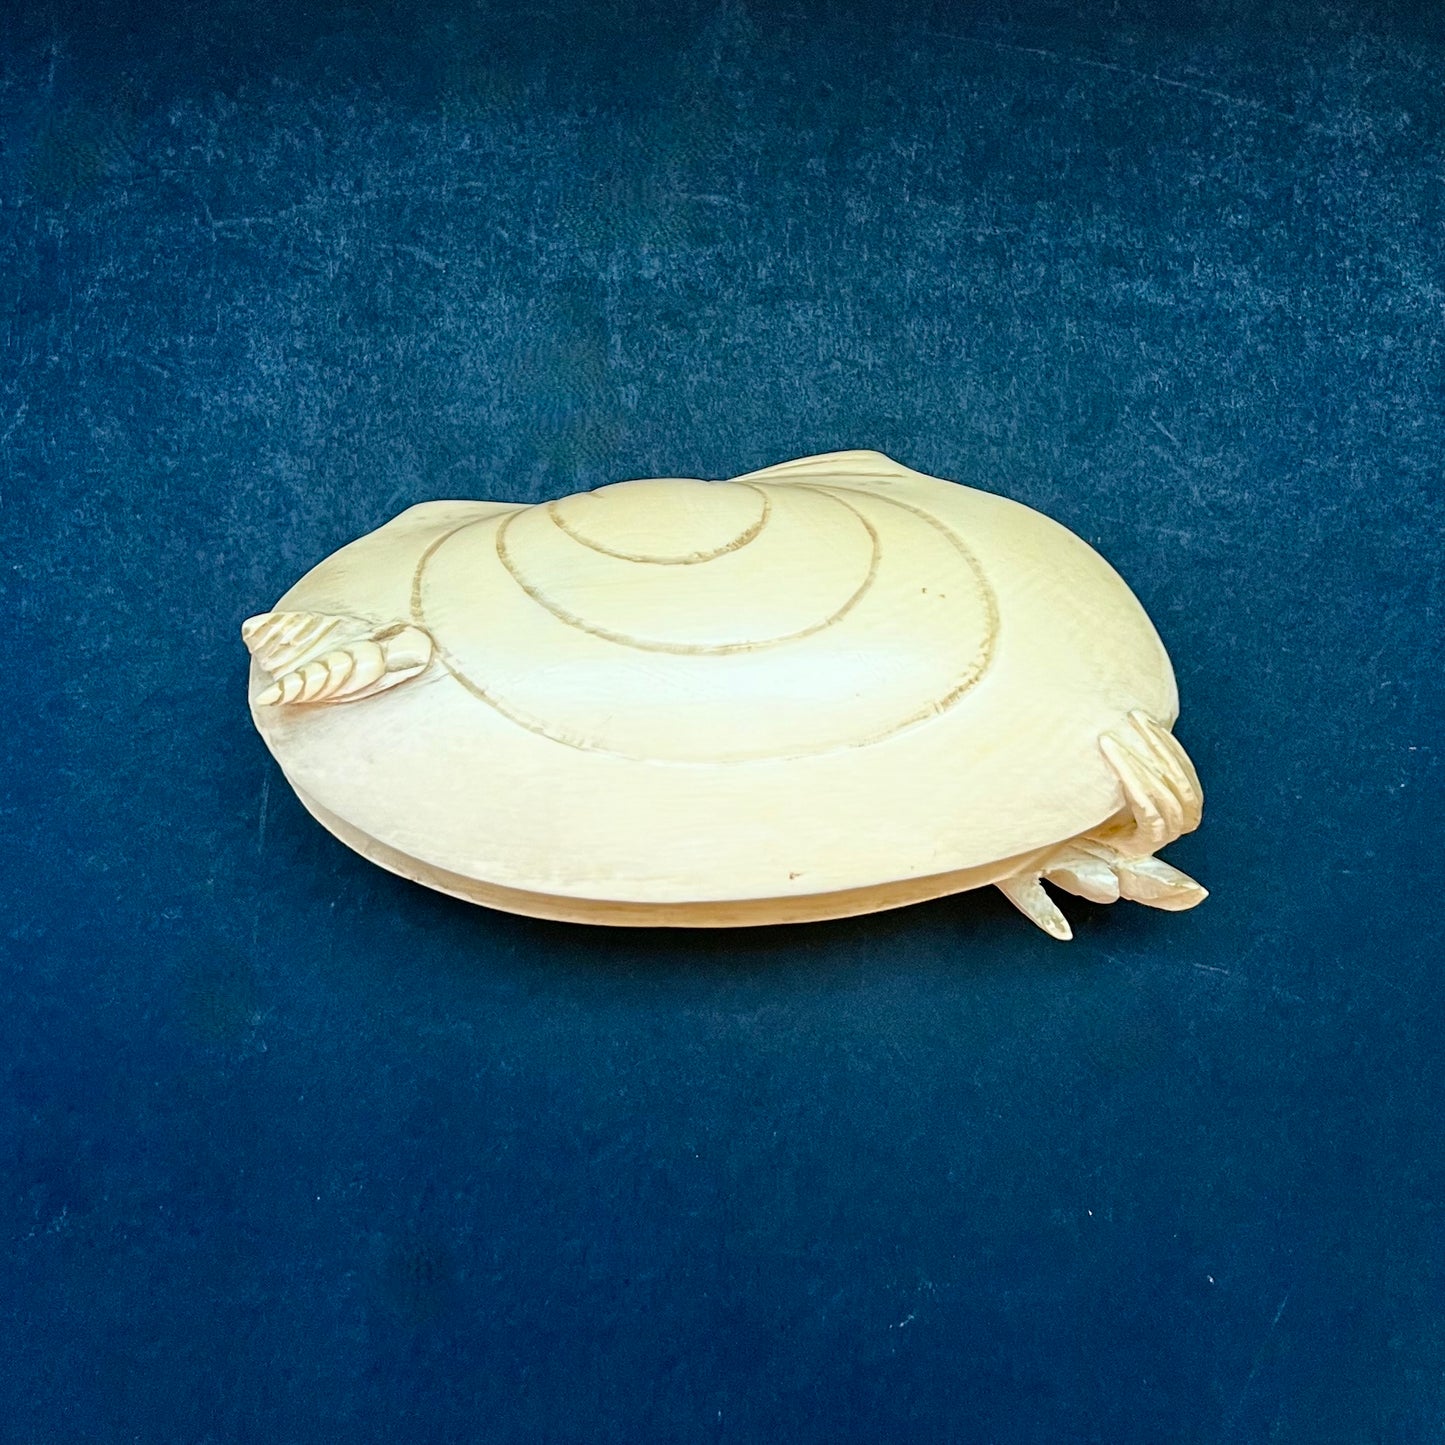 罕见而可爱的 20 世纪早期中国穴堀式“蛤蜊之梦”雕刻，约 20 世纪 20 年代